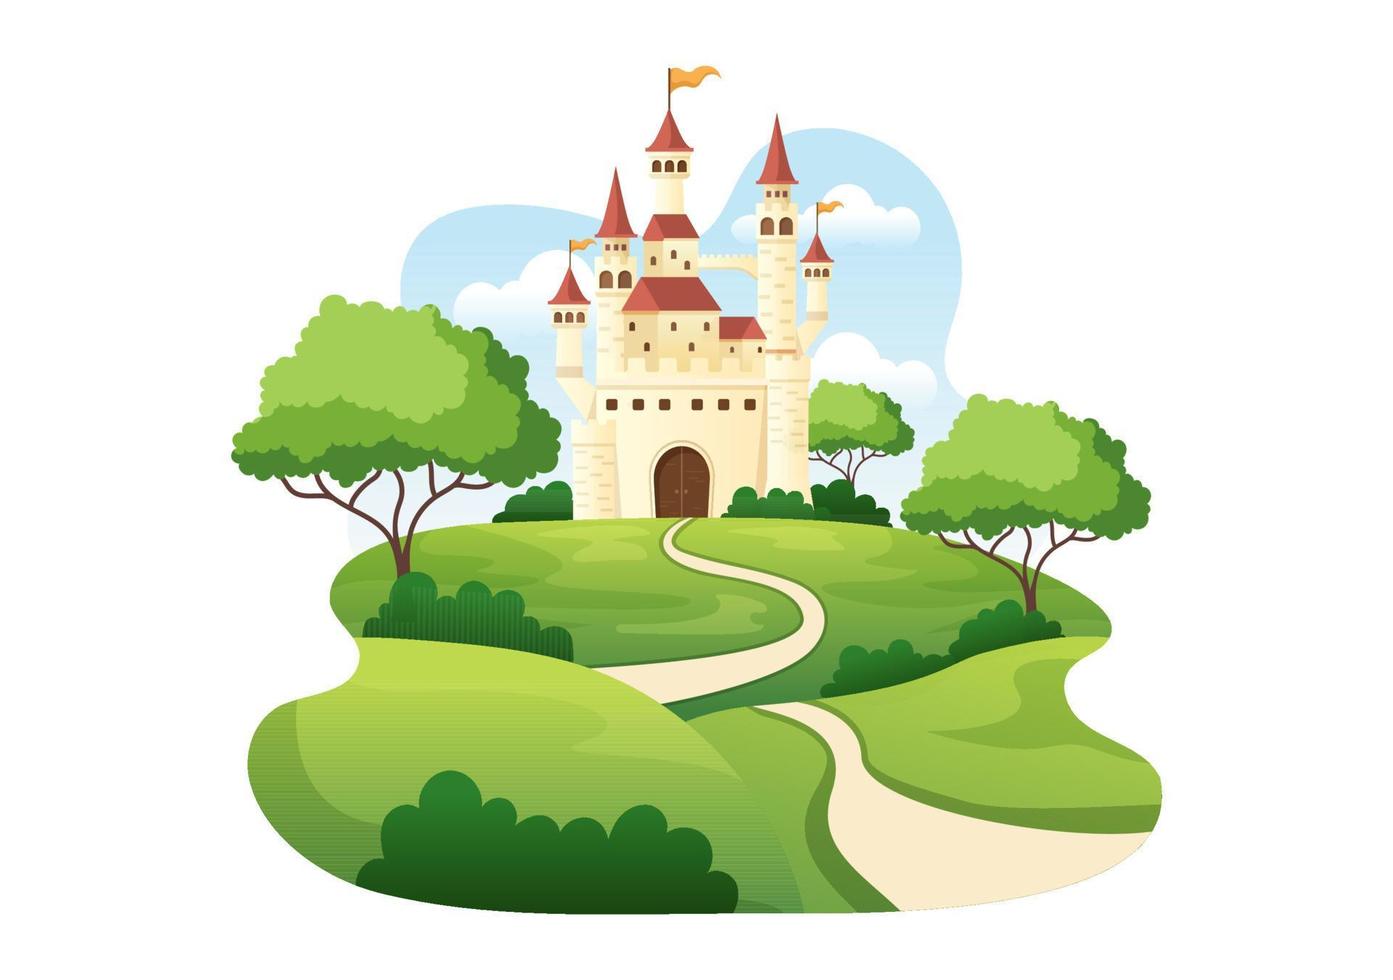 slott med majestätisk palatsarkitektur och sagoliknande skogslandskap i tecknad platt stilillustration vektor